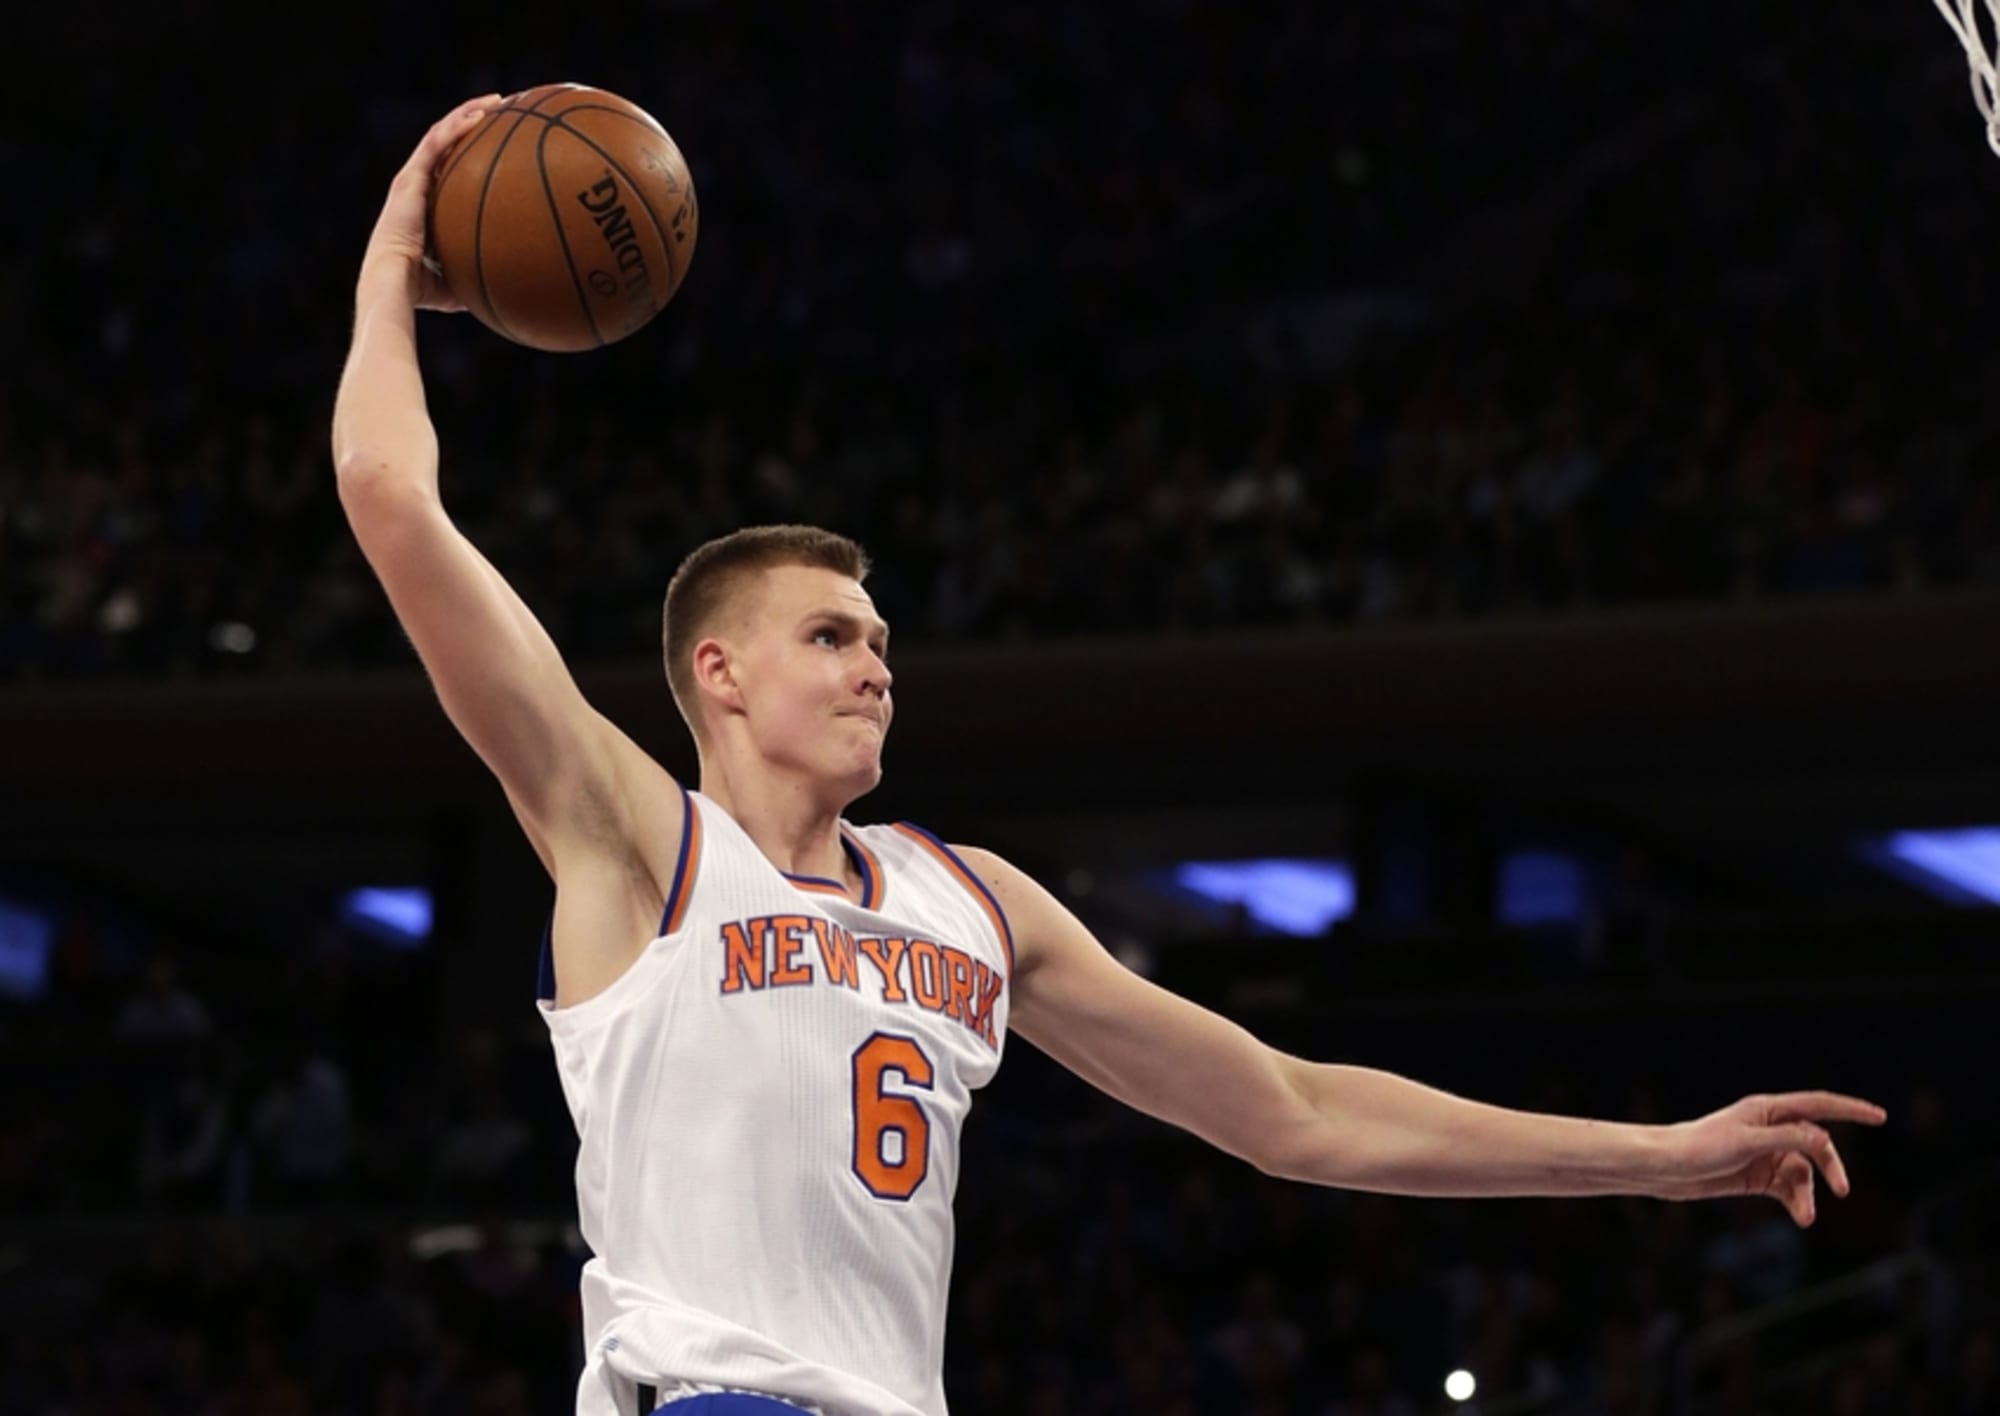 New York Knicks rookie Kristaps Porzingis fourth in jersey sales